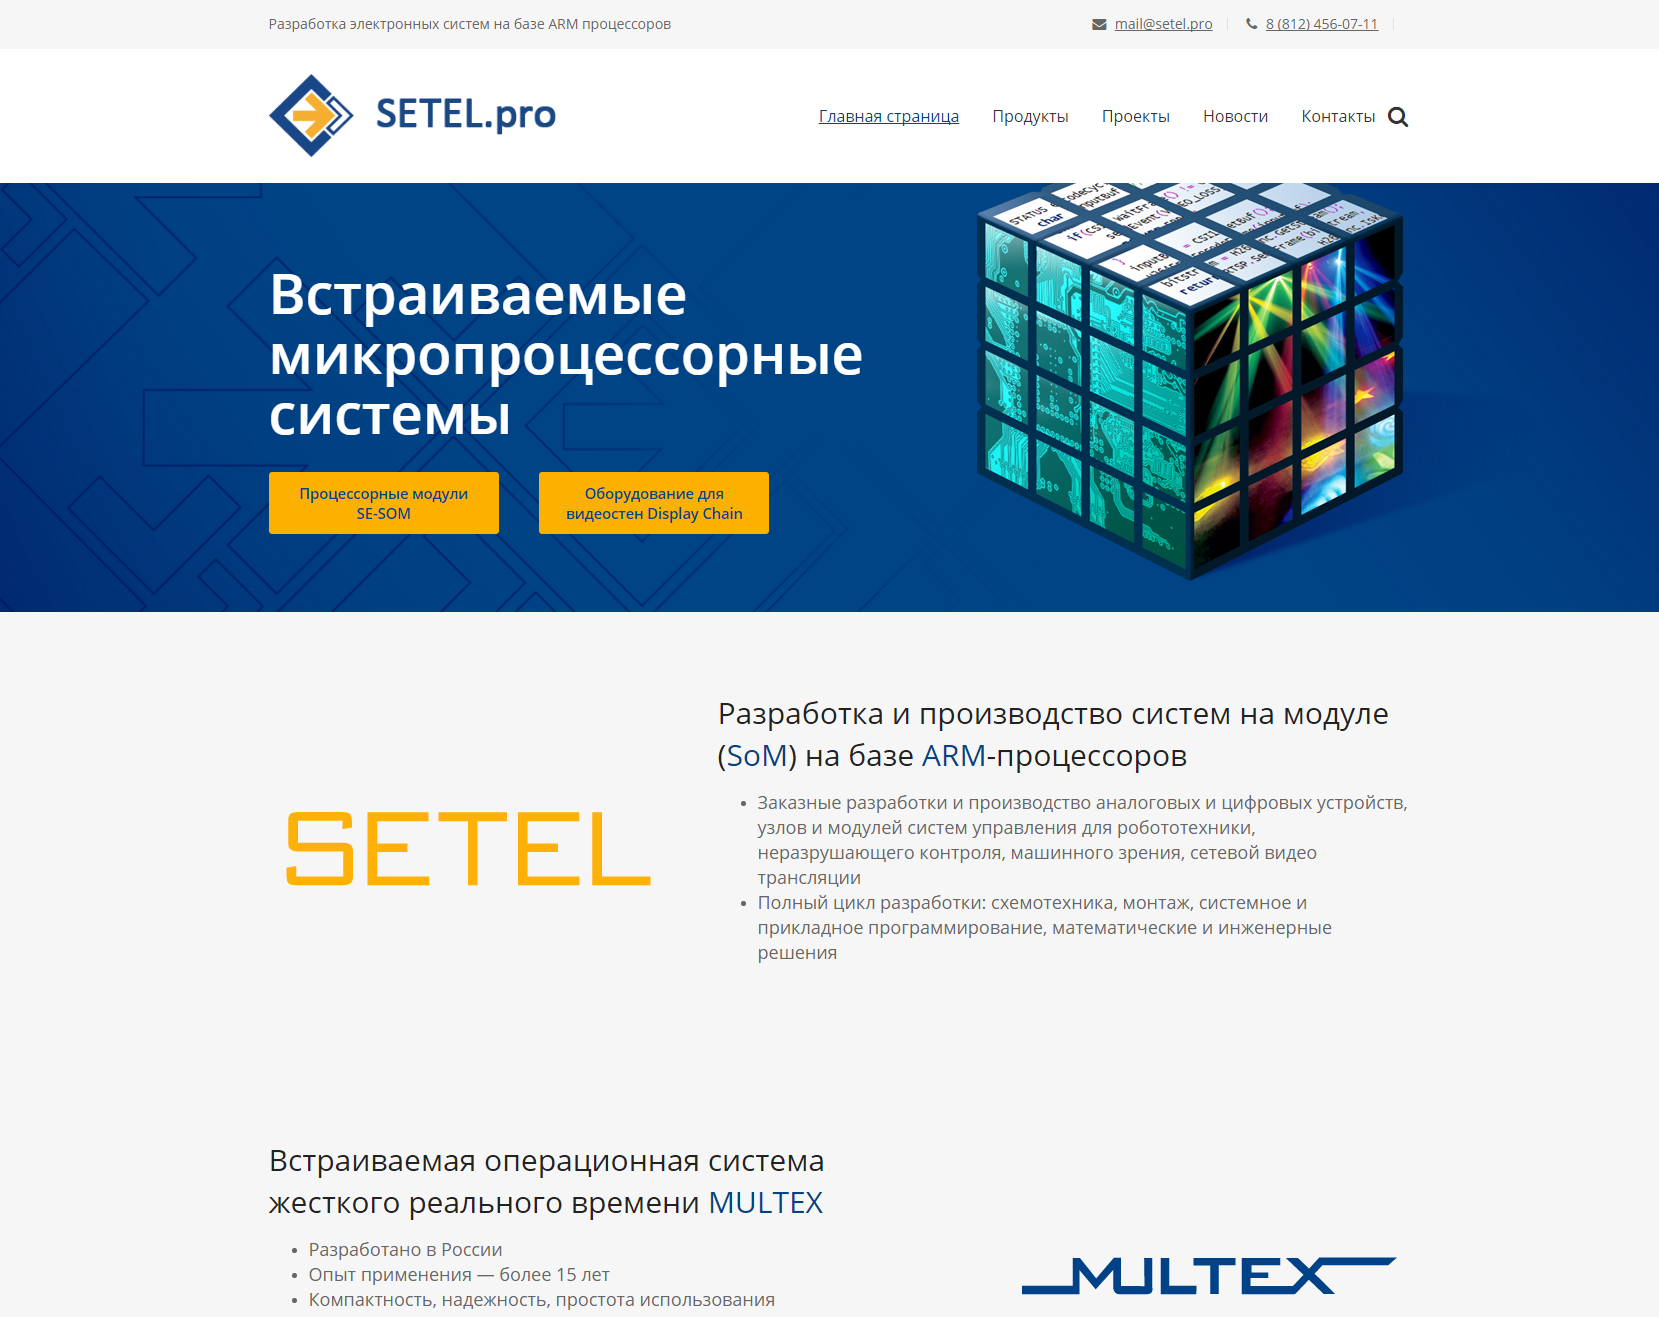 SETEL.pro - Встраиваемые микропроцессорные системы